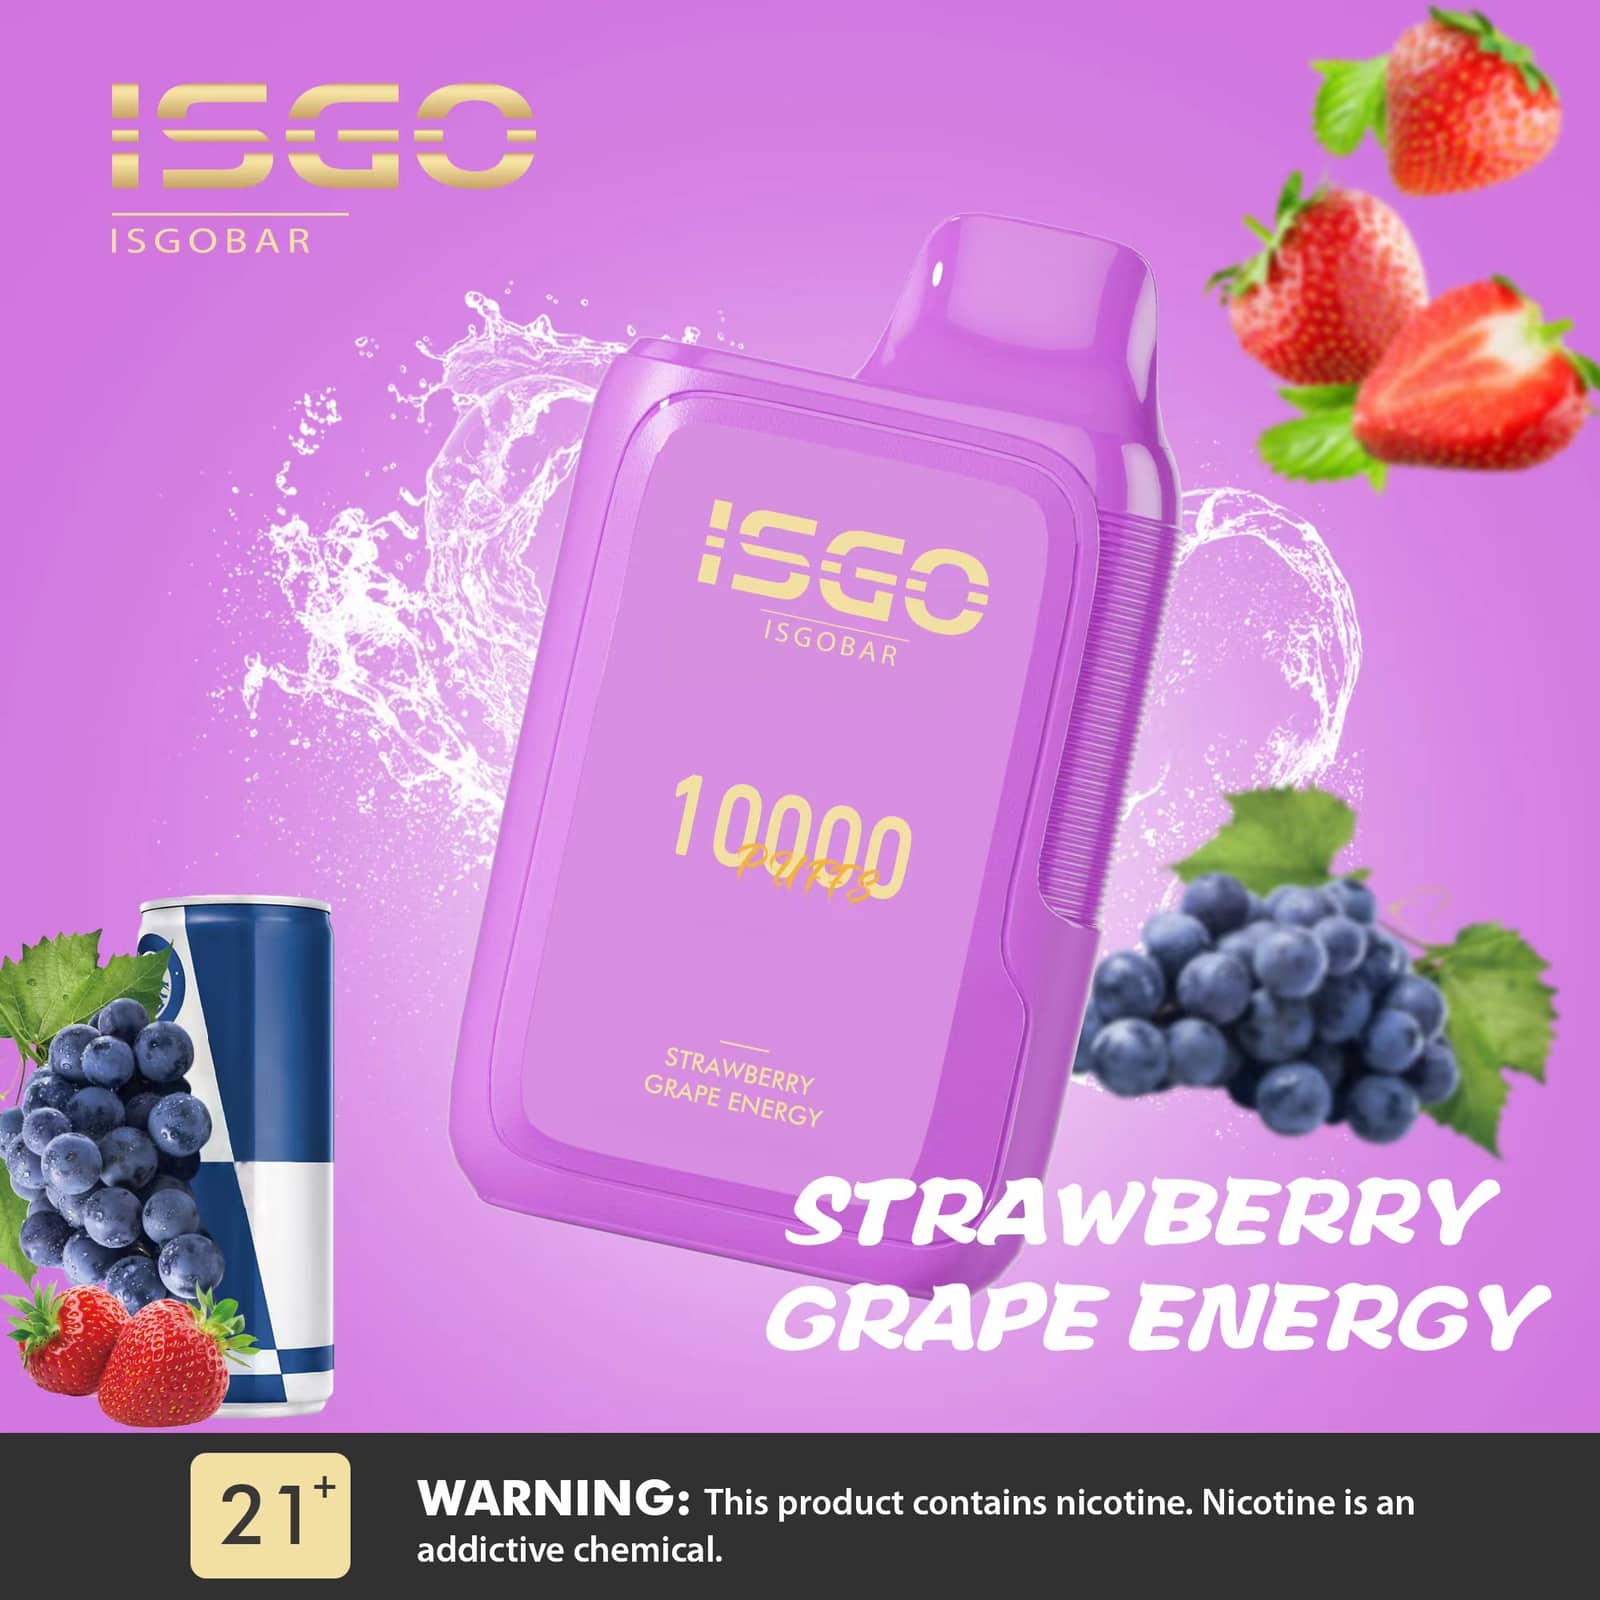 ISGO BAR 10000 - STRAWBERRY GRAPE ENERGY